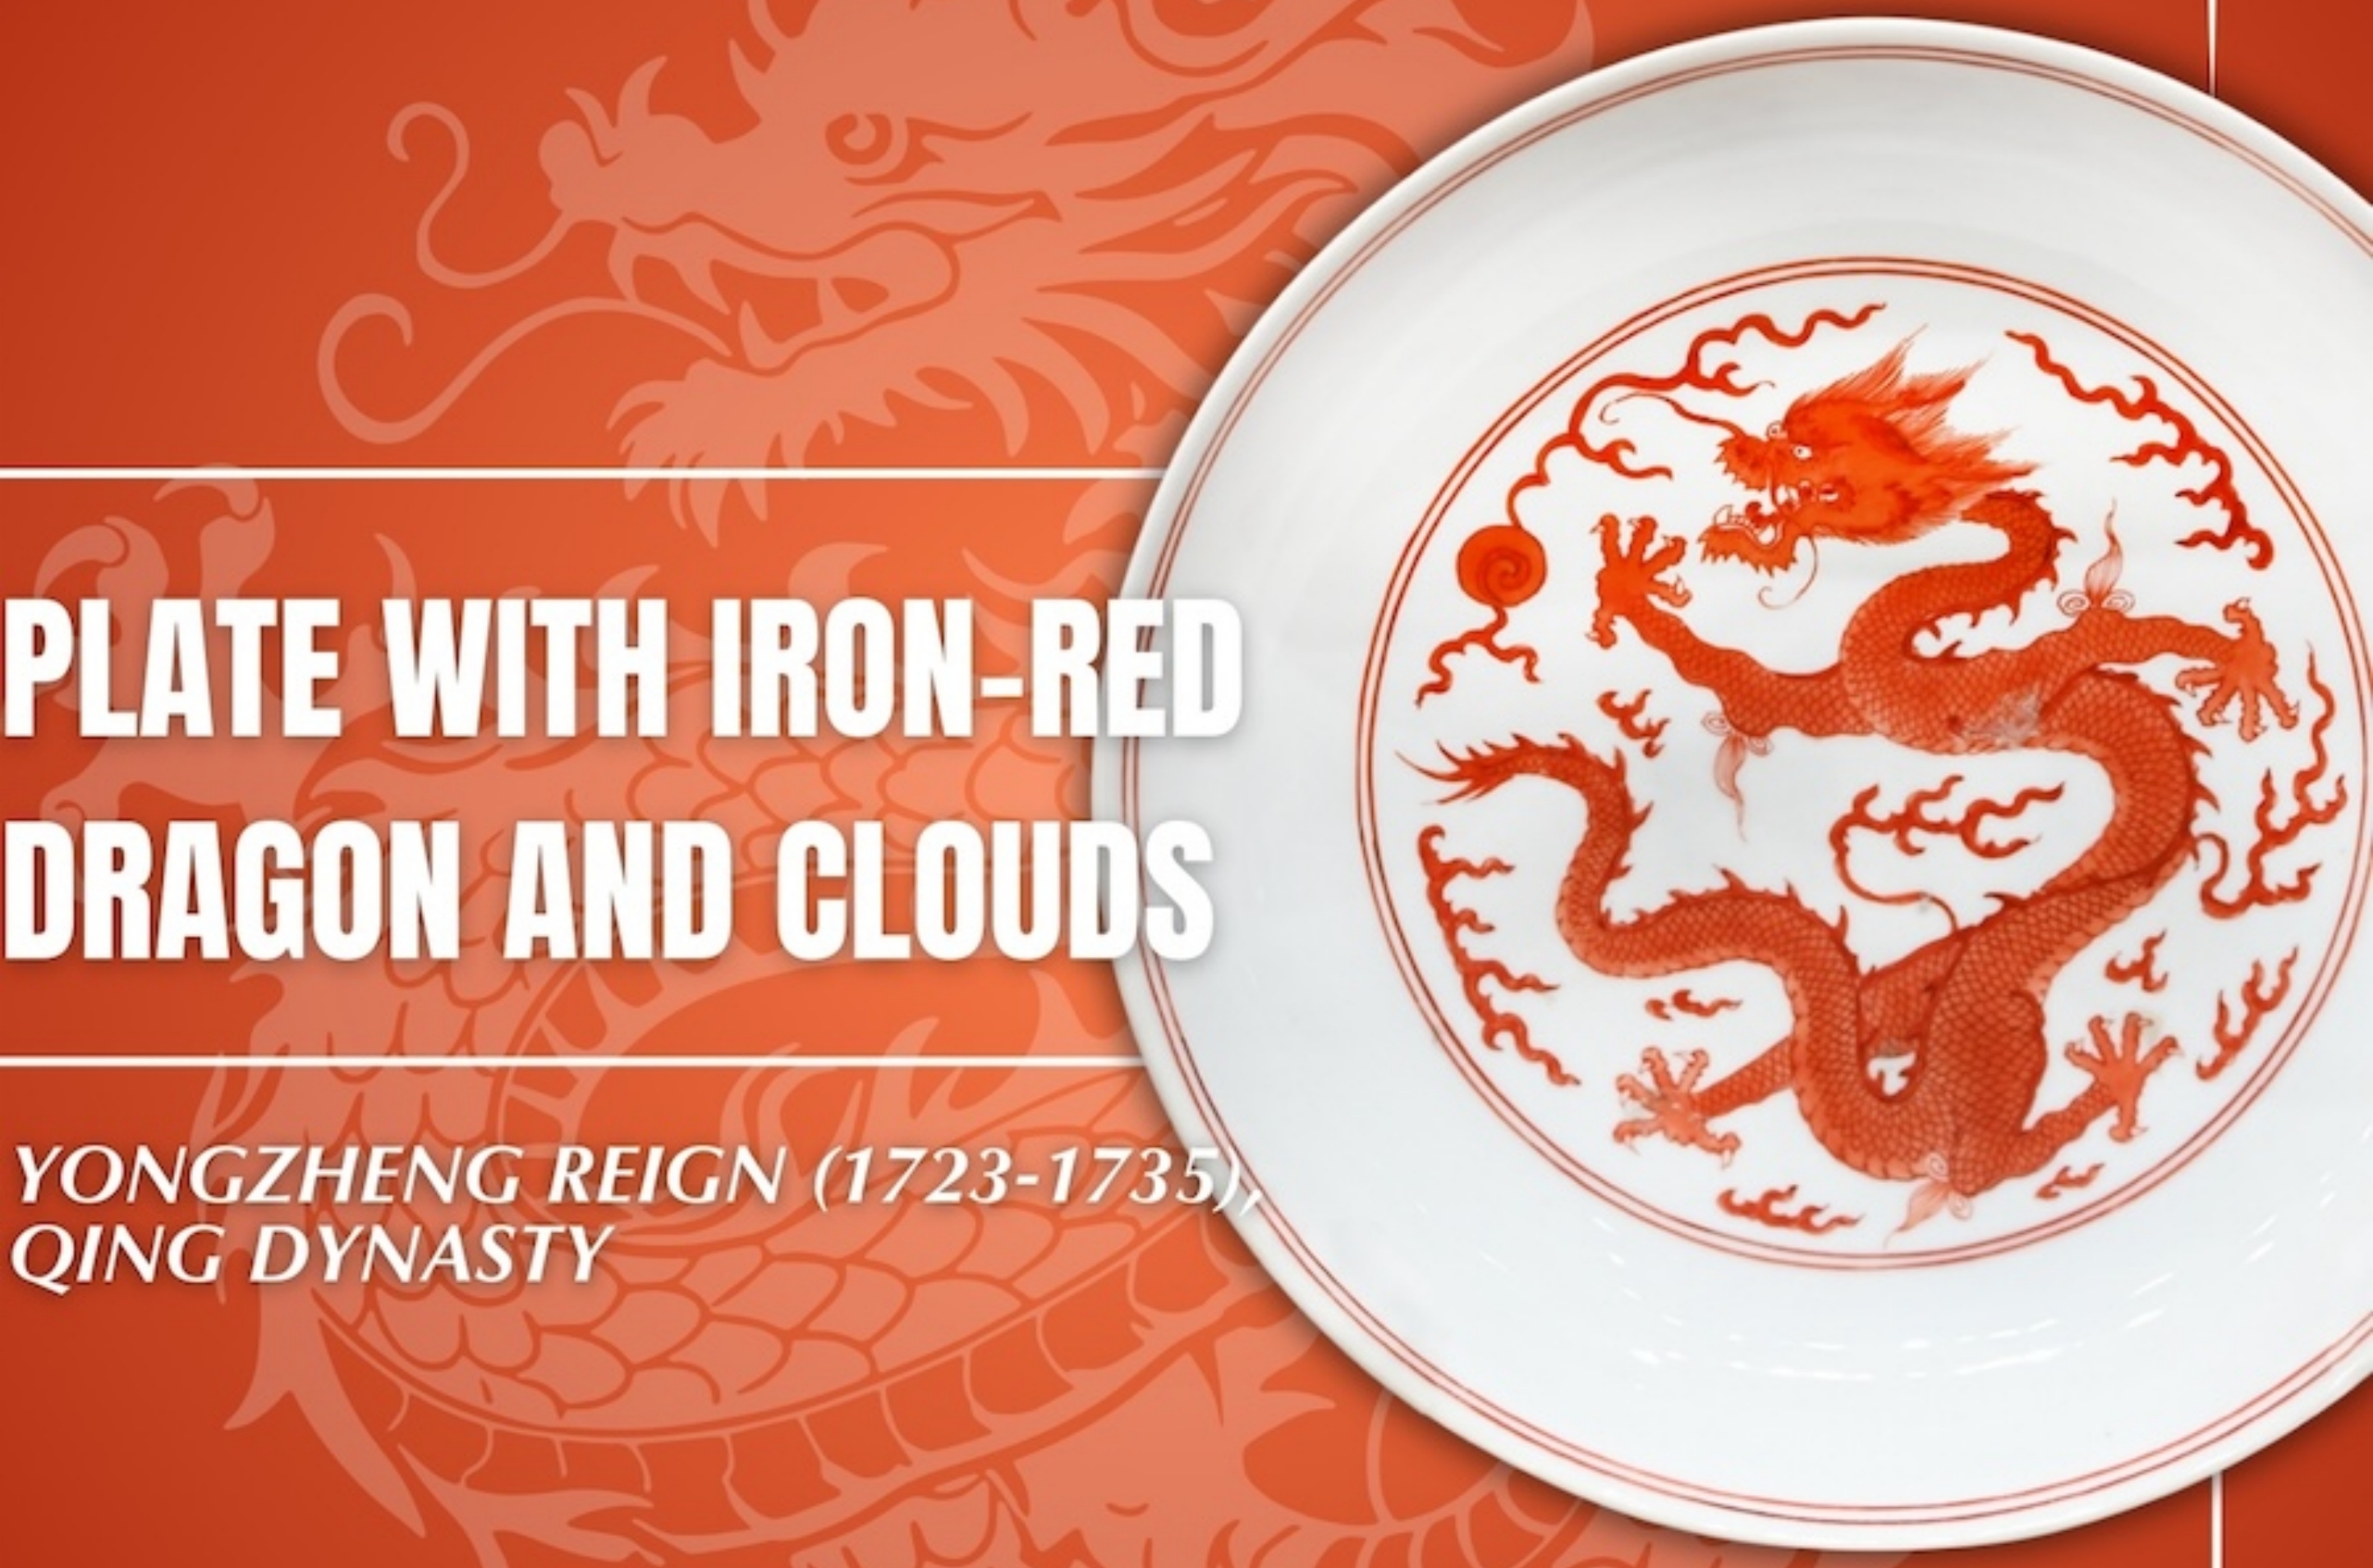 Dragon motif in Palace Museum's ceramic treasures